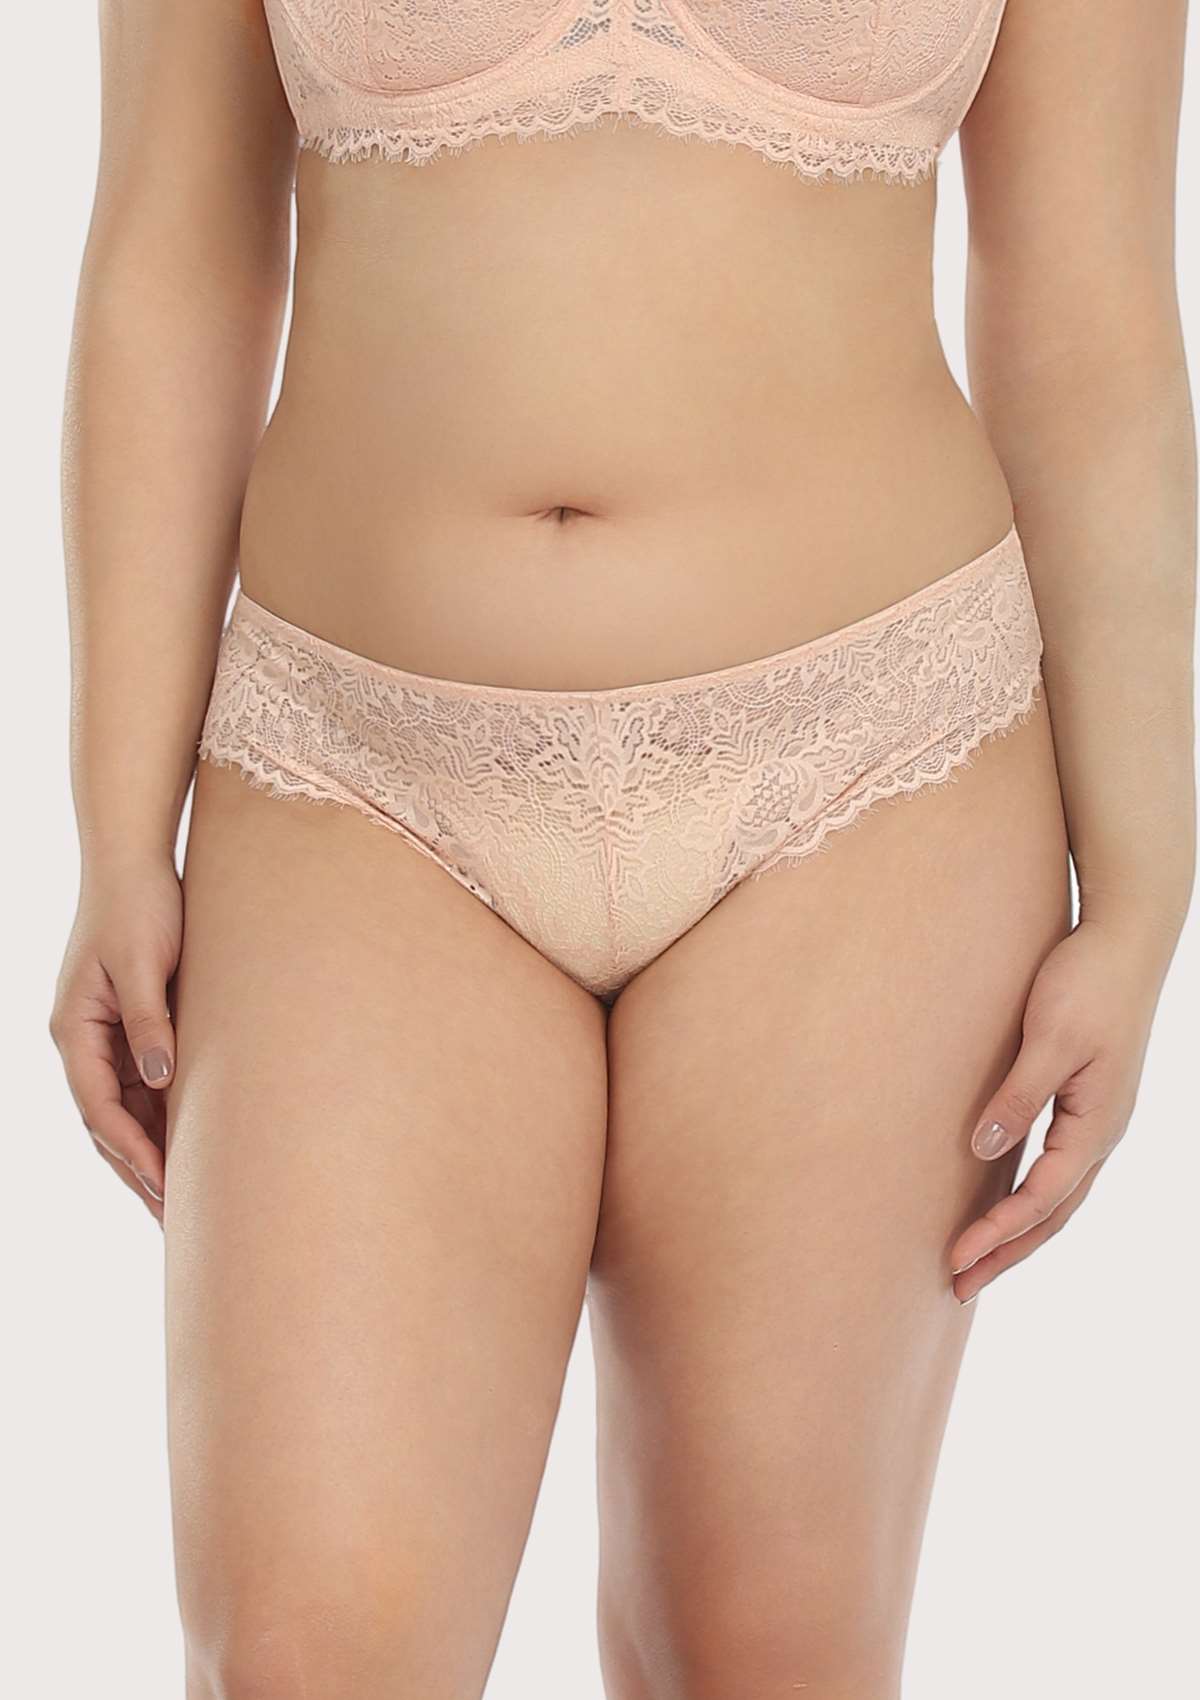 HSIA Sunflower Exquisite Pink Lace Bikini Underwear - XL / High-Rise Brief / Pink